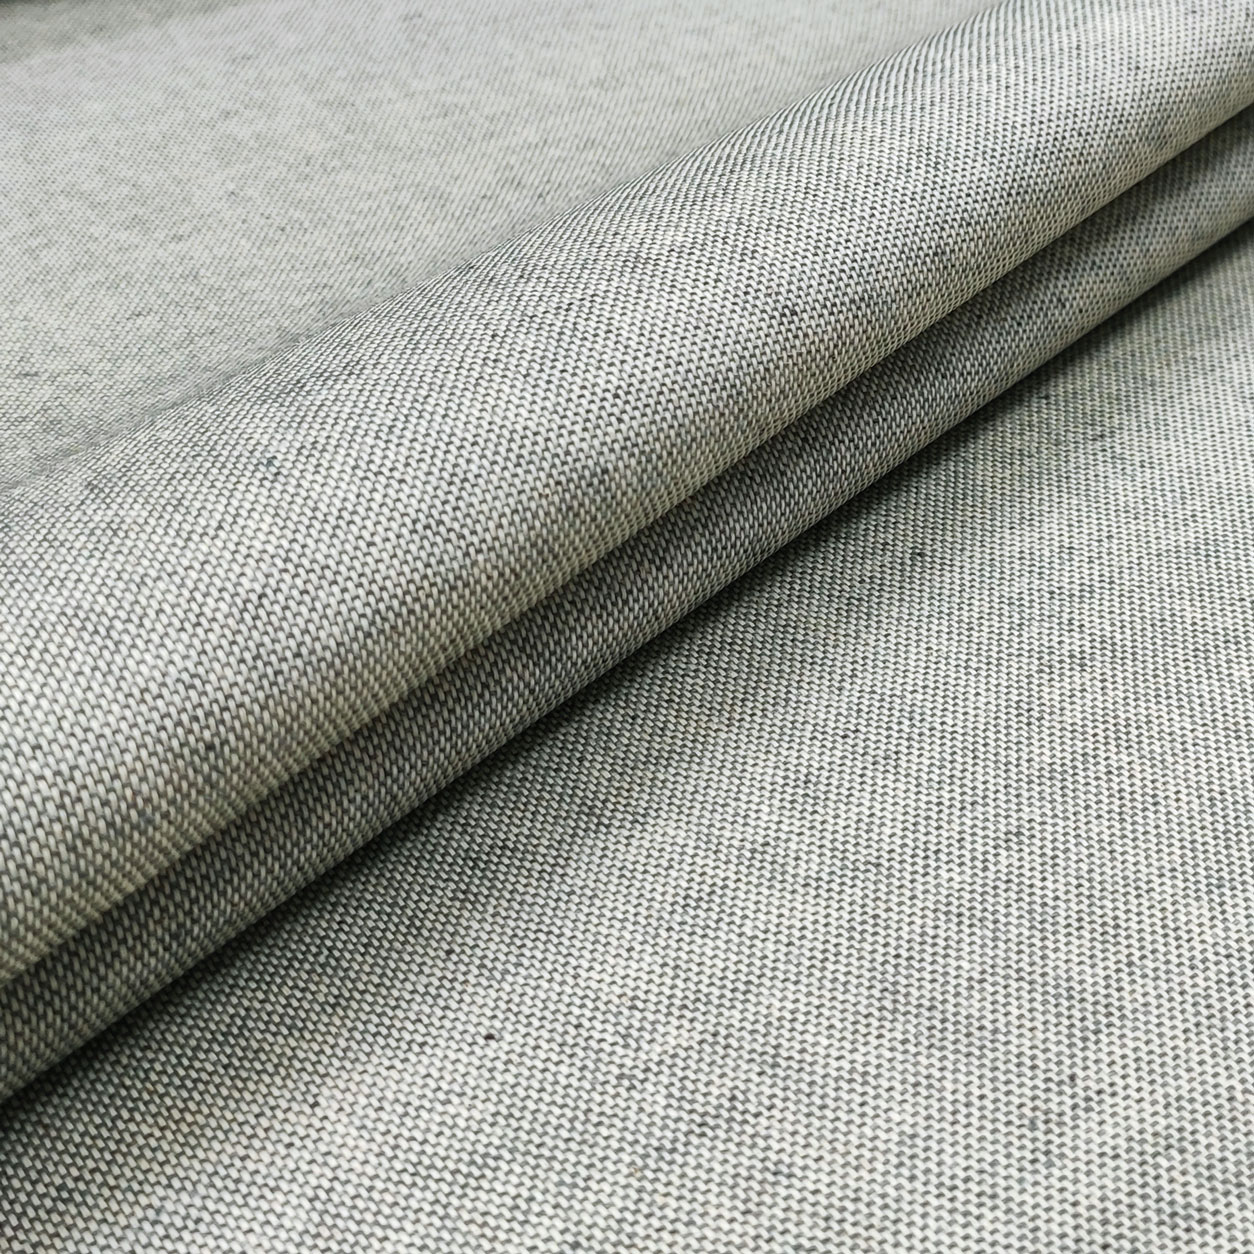 tovaglia-resinata-grigio-chiaro-medio-melange-dettaglio